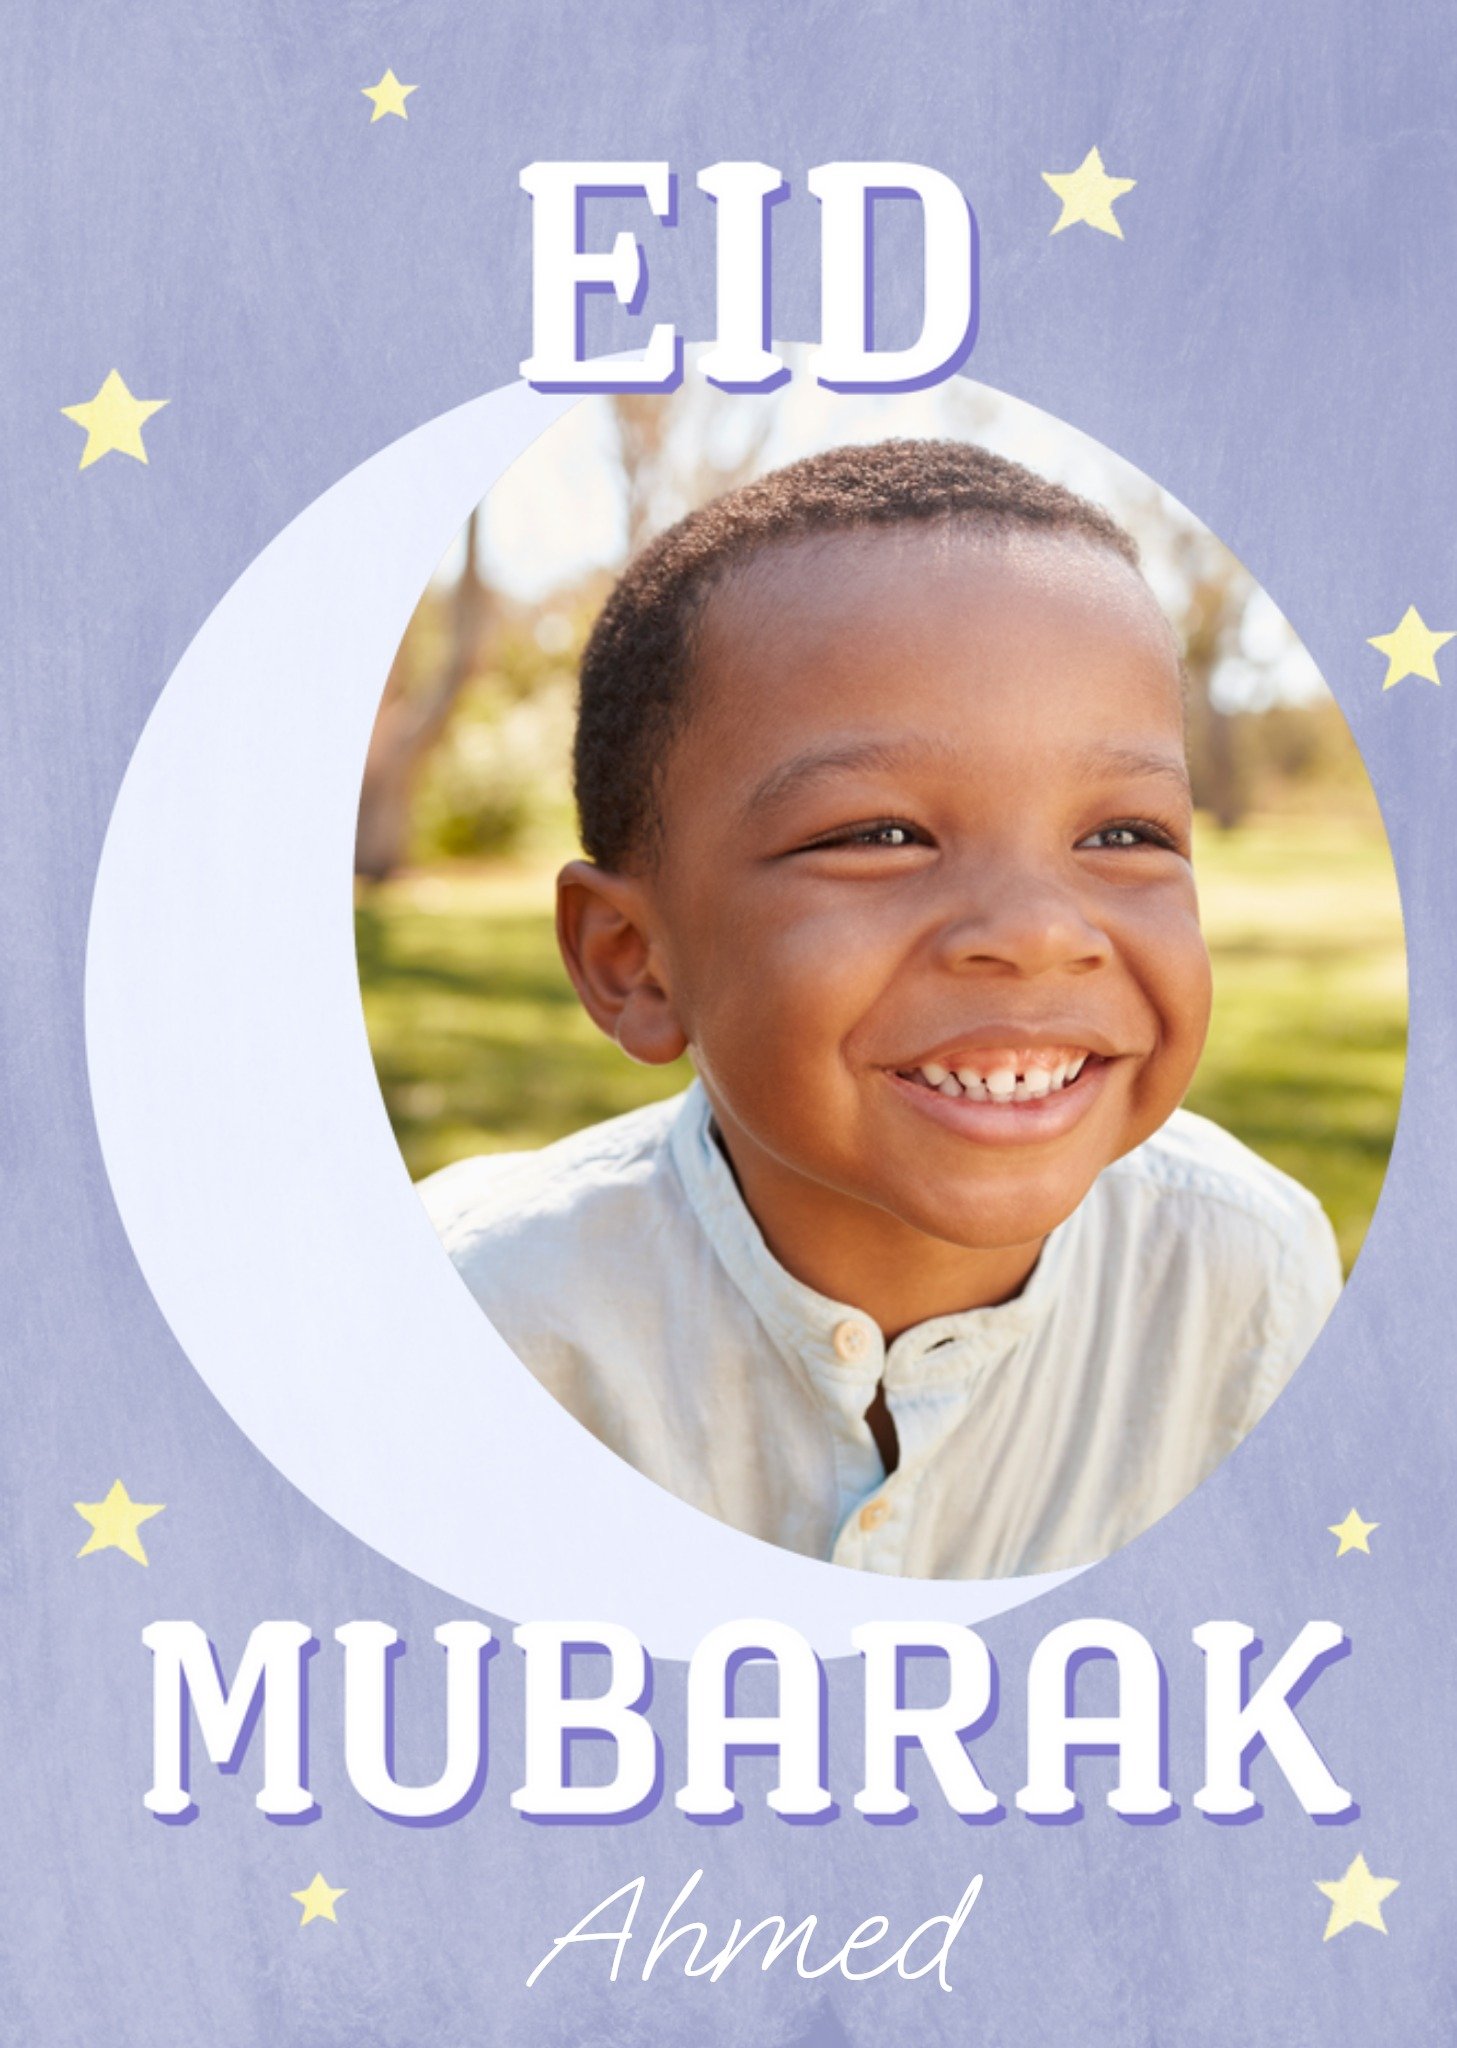 Moonpig Moon And Stars Photo Upload Eid Mubarak Card, Large